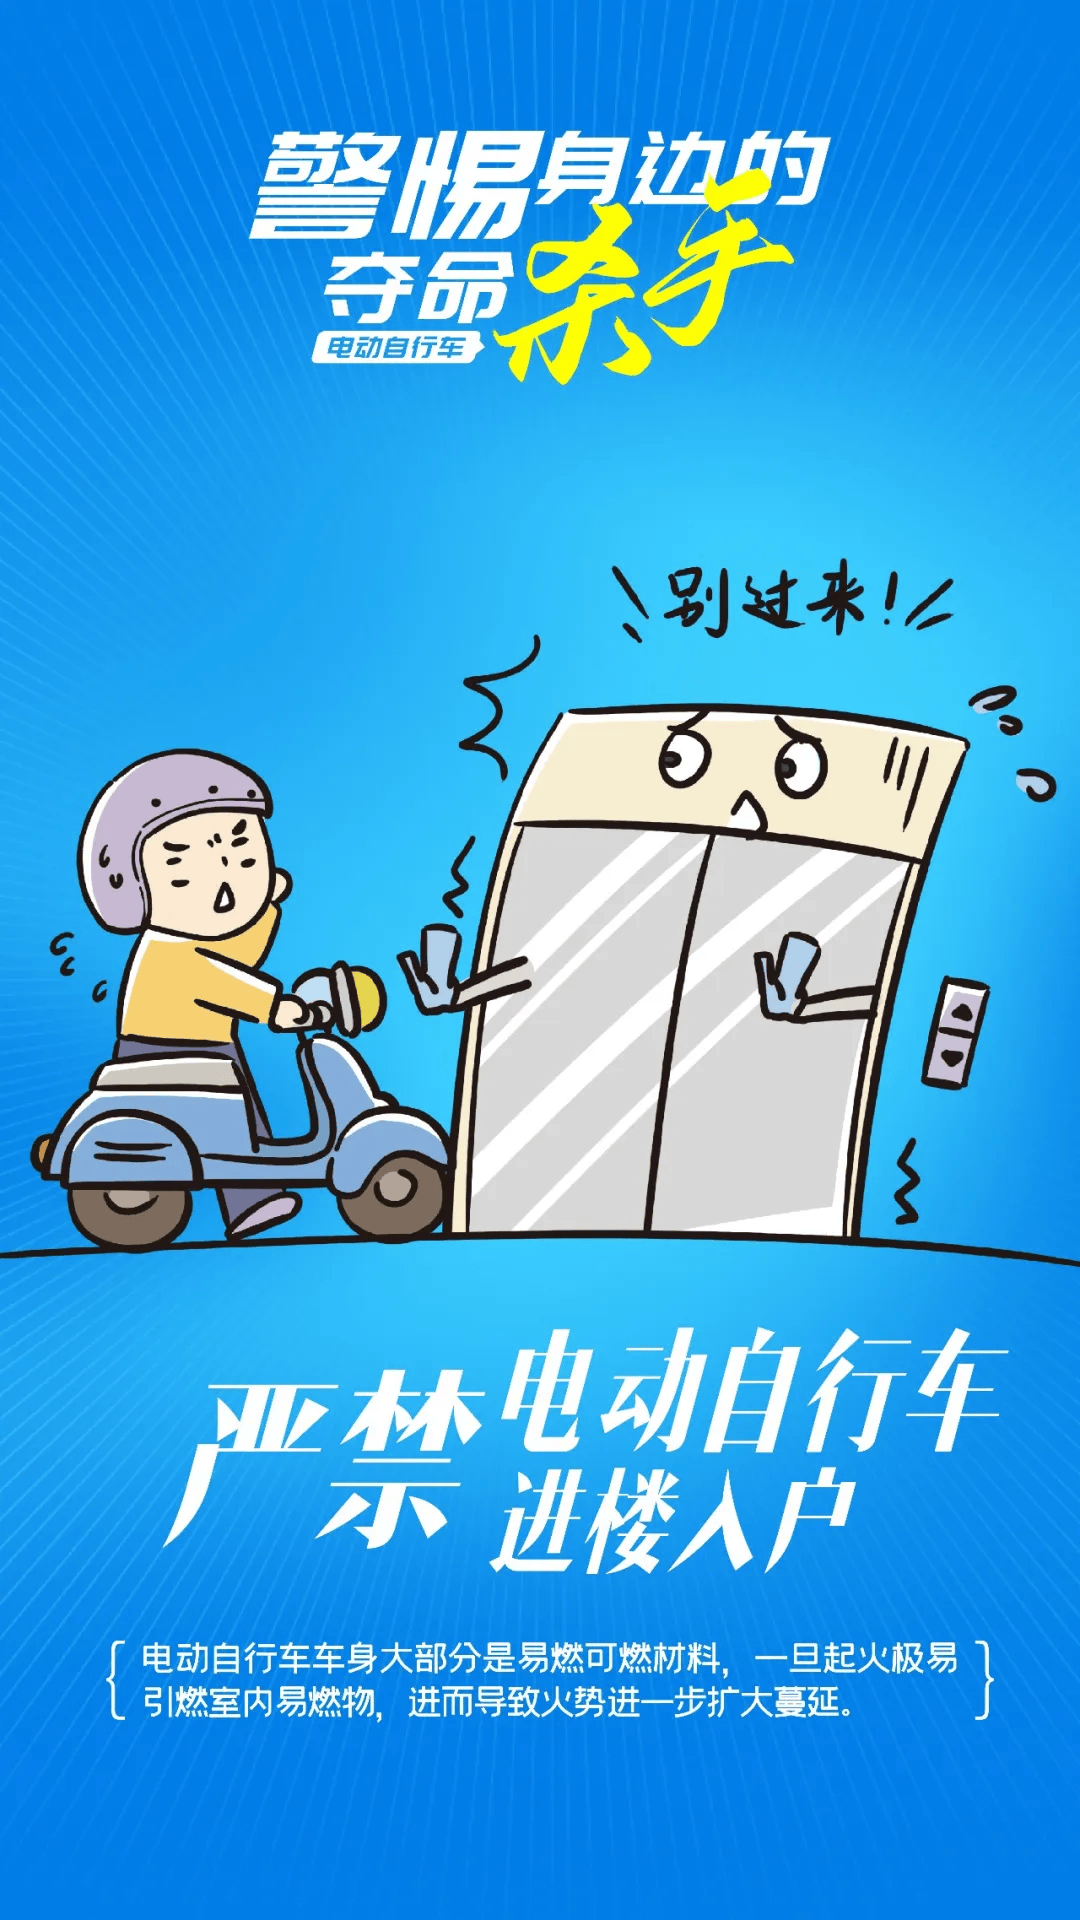 潇湘晨报:管家婆一码一肖一种大全-仅剩车架！电动自行车车棚发生火灾！